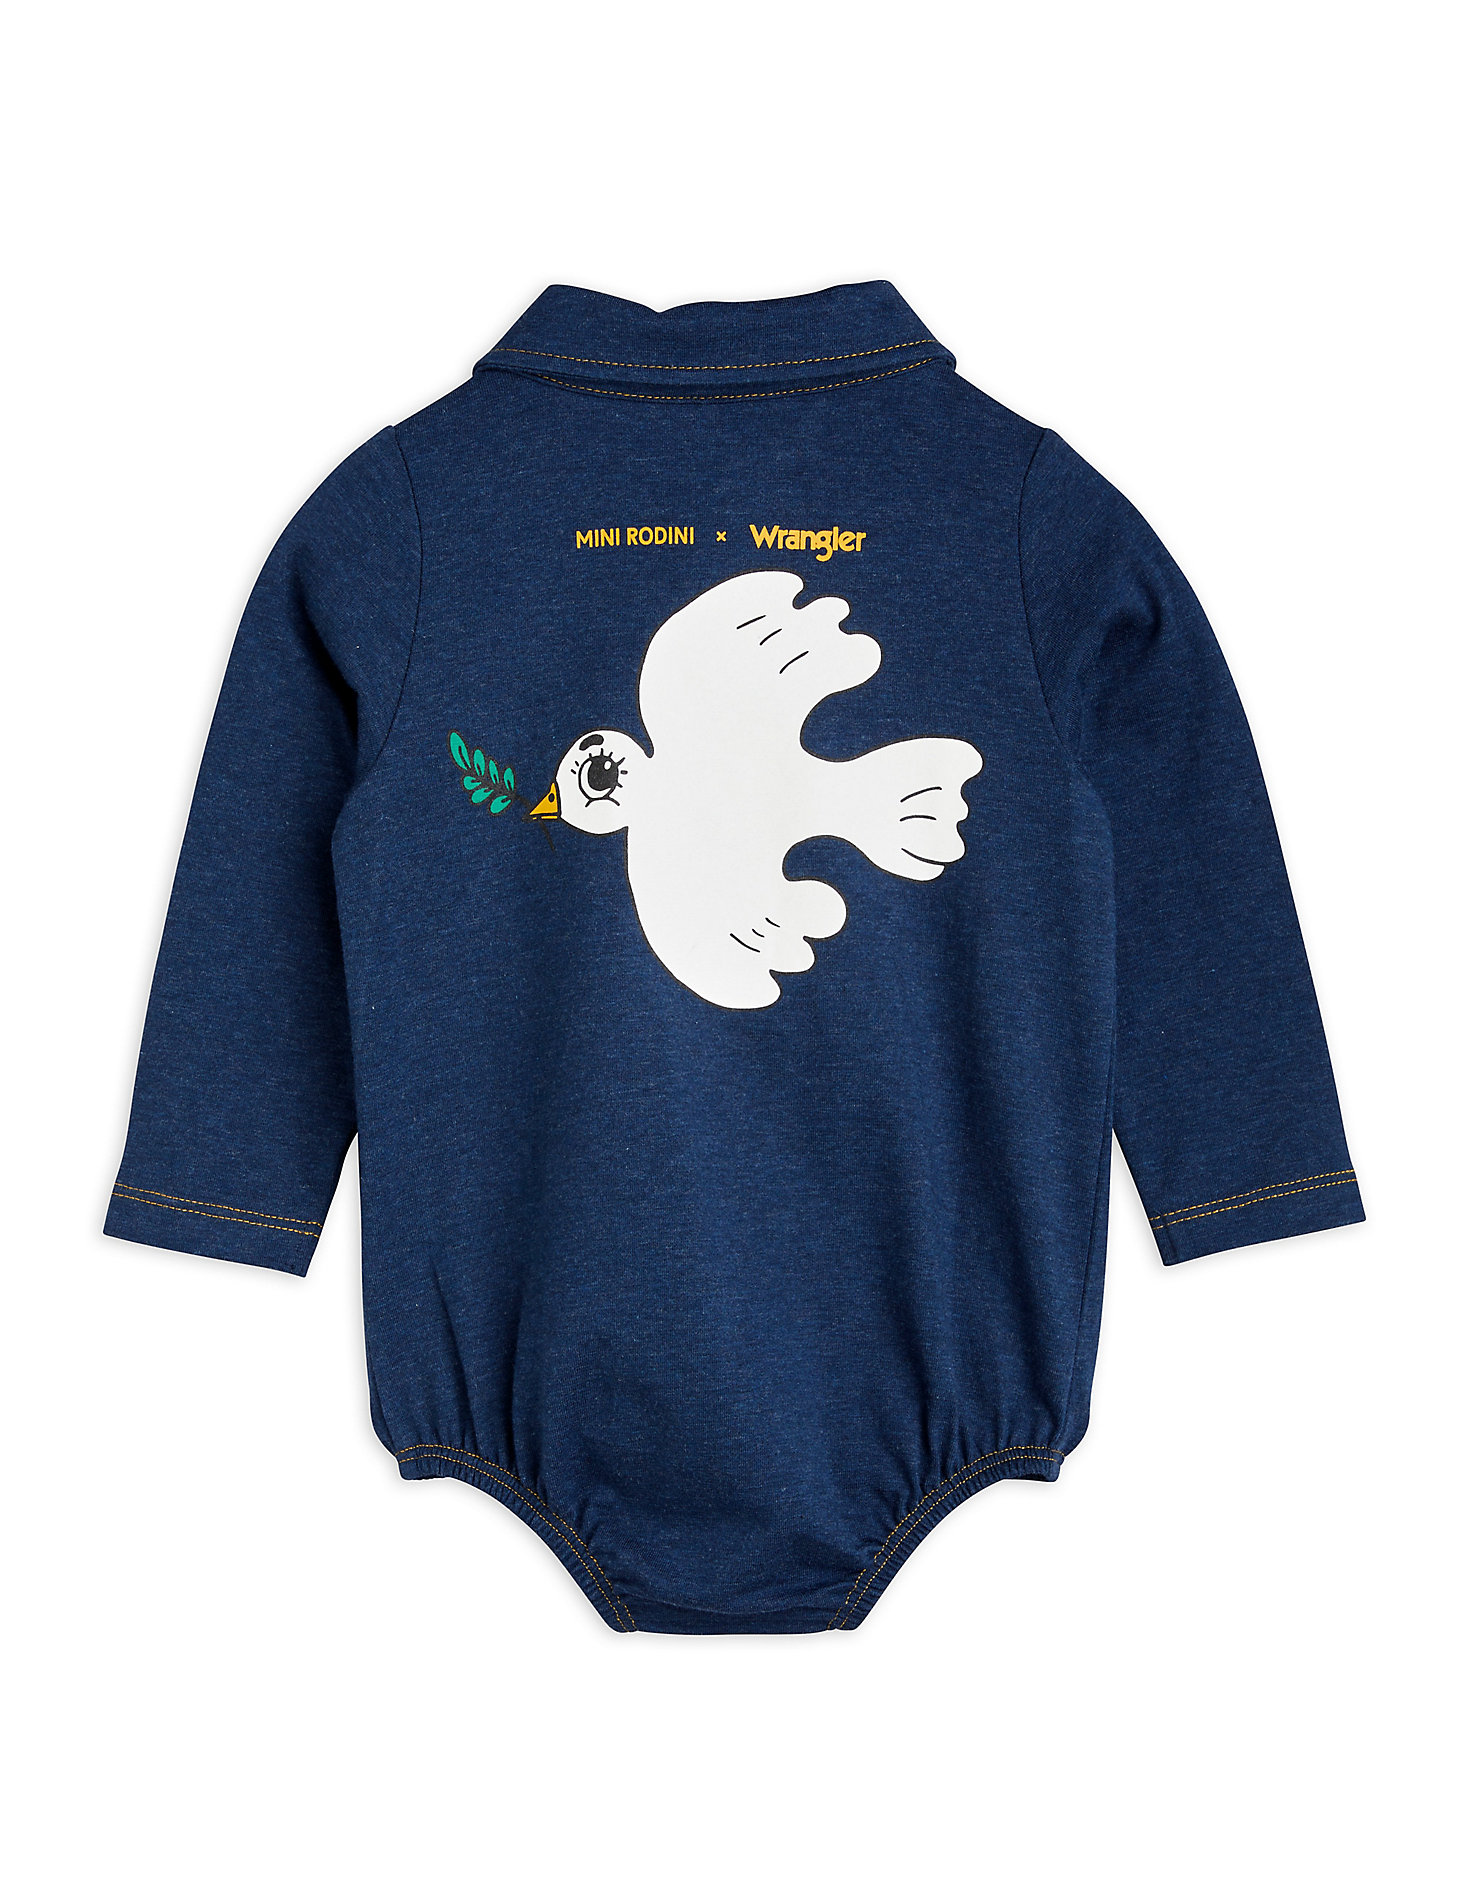 Mini Rodini x Wrangler Baby Peace Dove Bodysuit in Blue alternative view 1